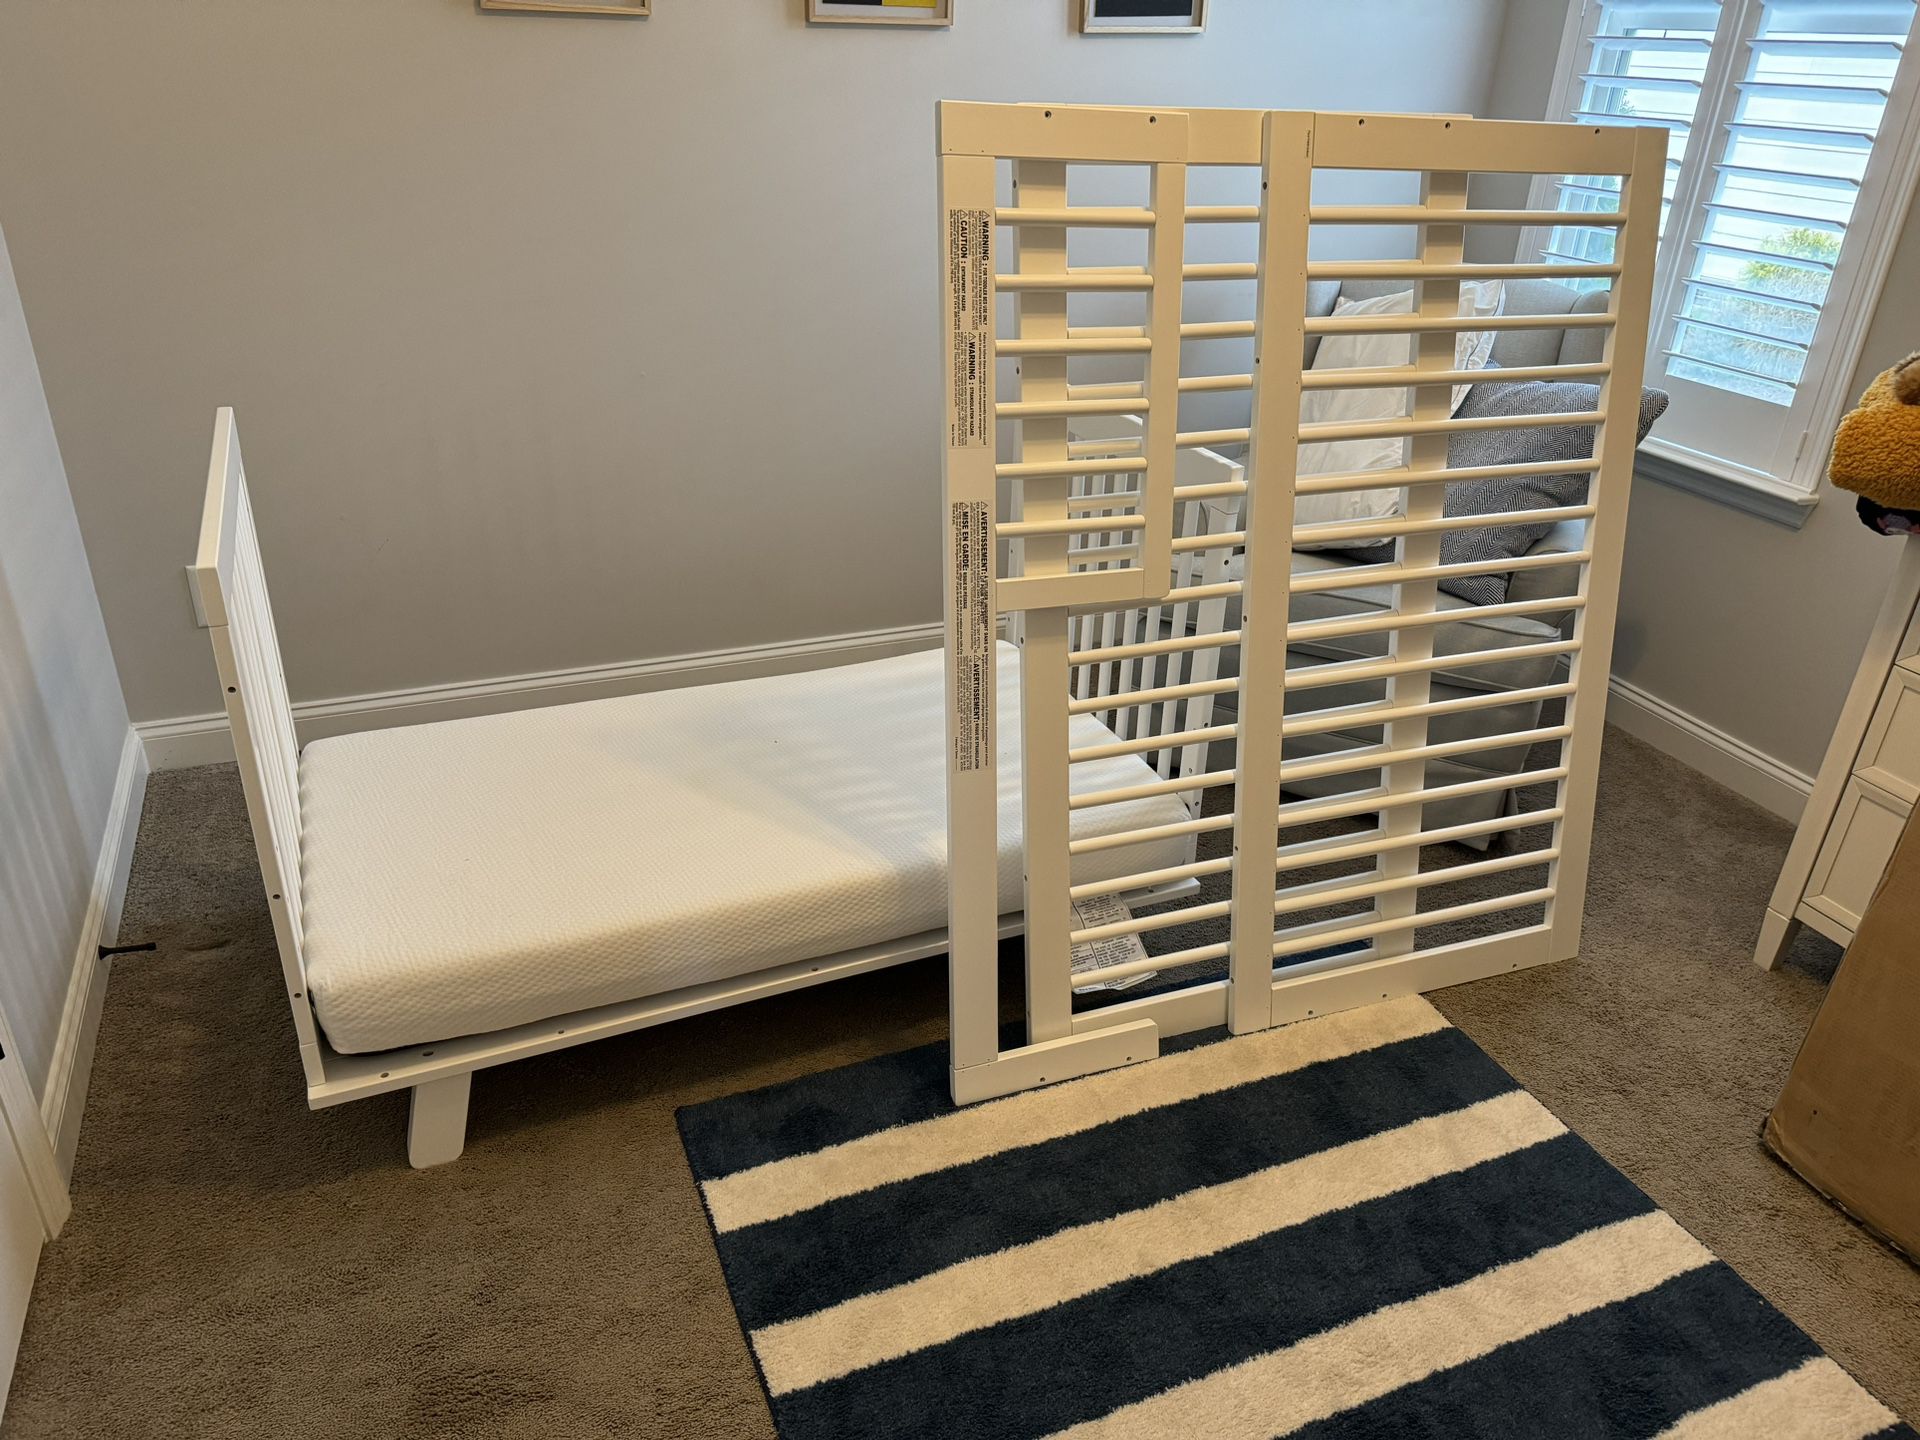 Crib/toddler Bed